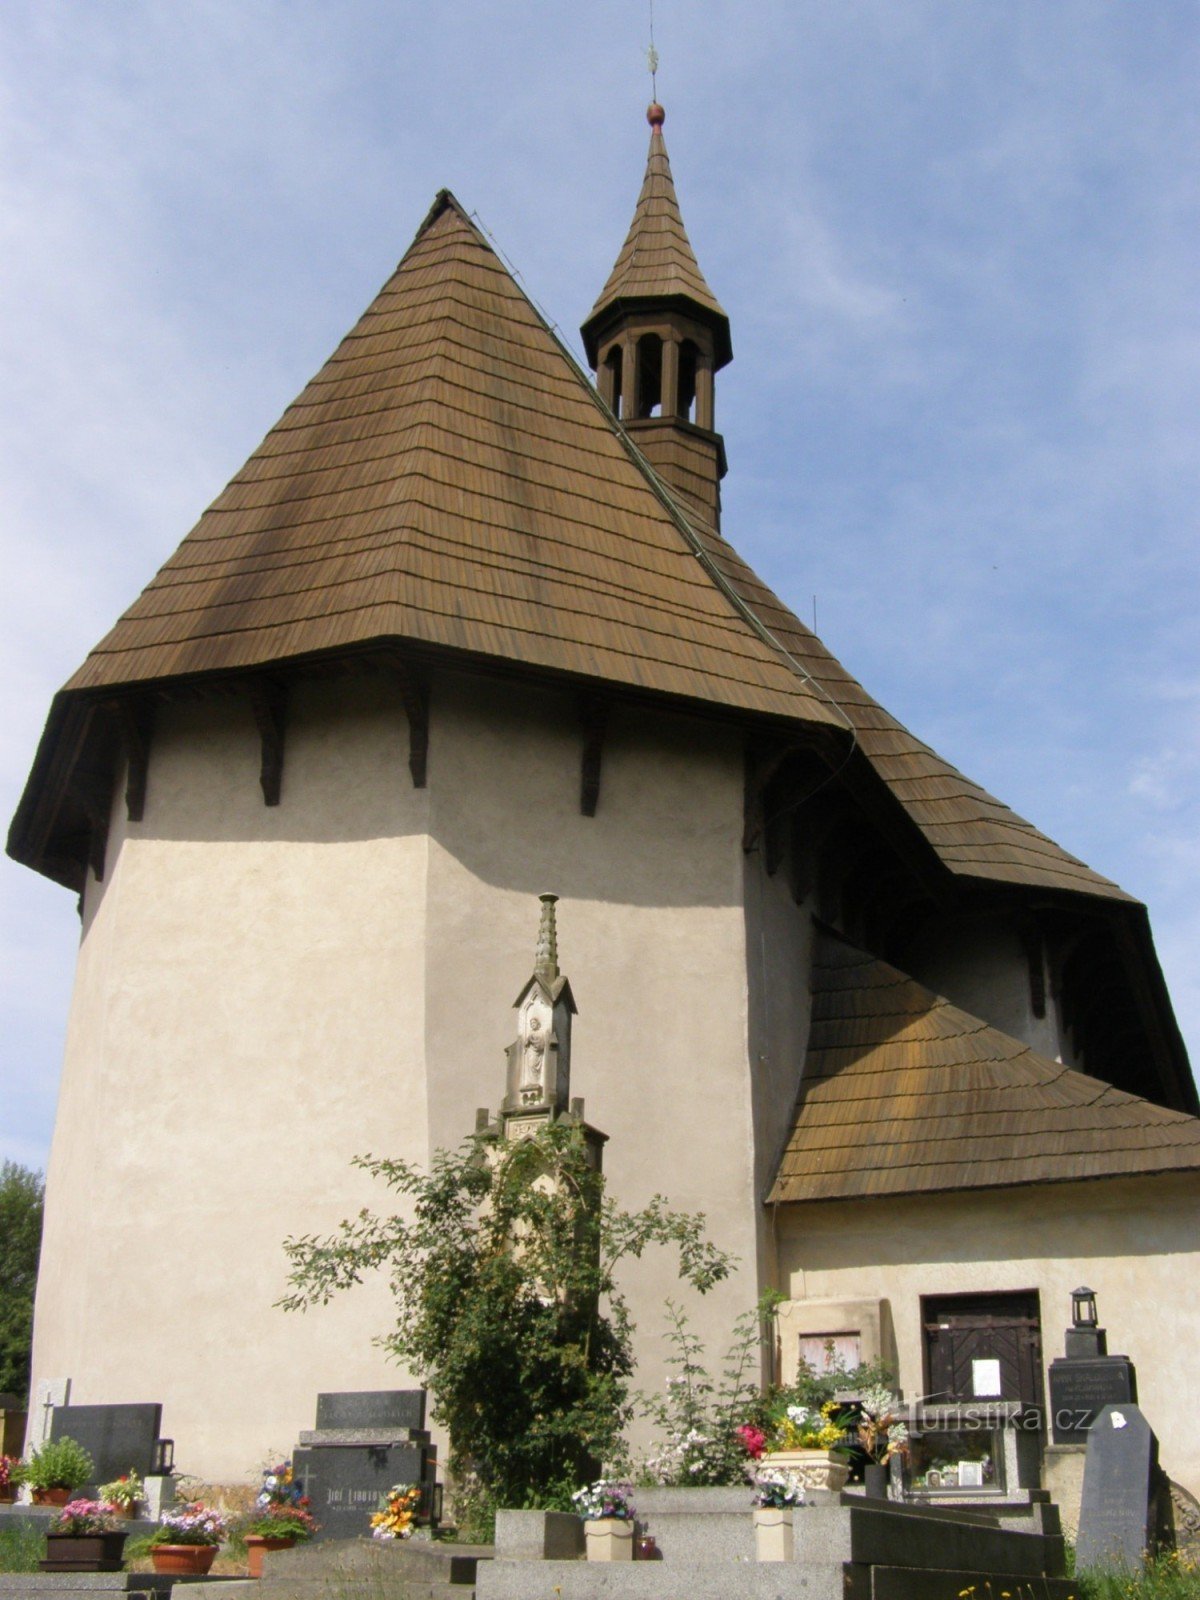 Kozojedy - drvena crkva sv. Vaclava